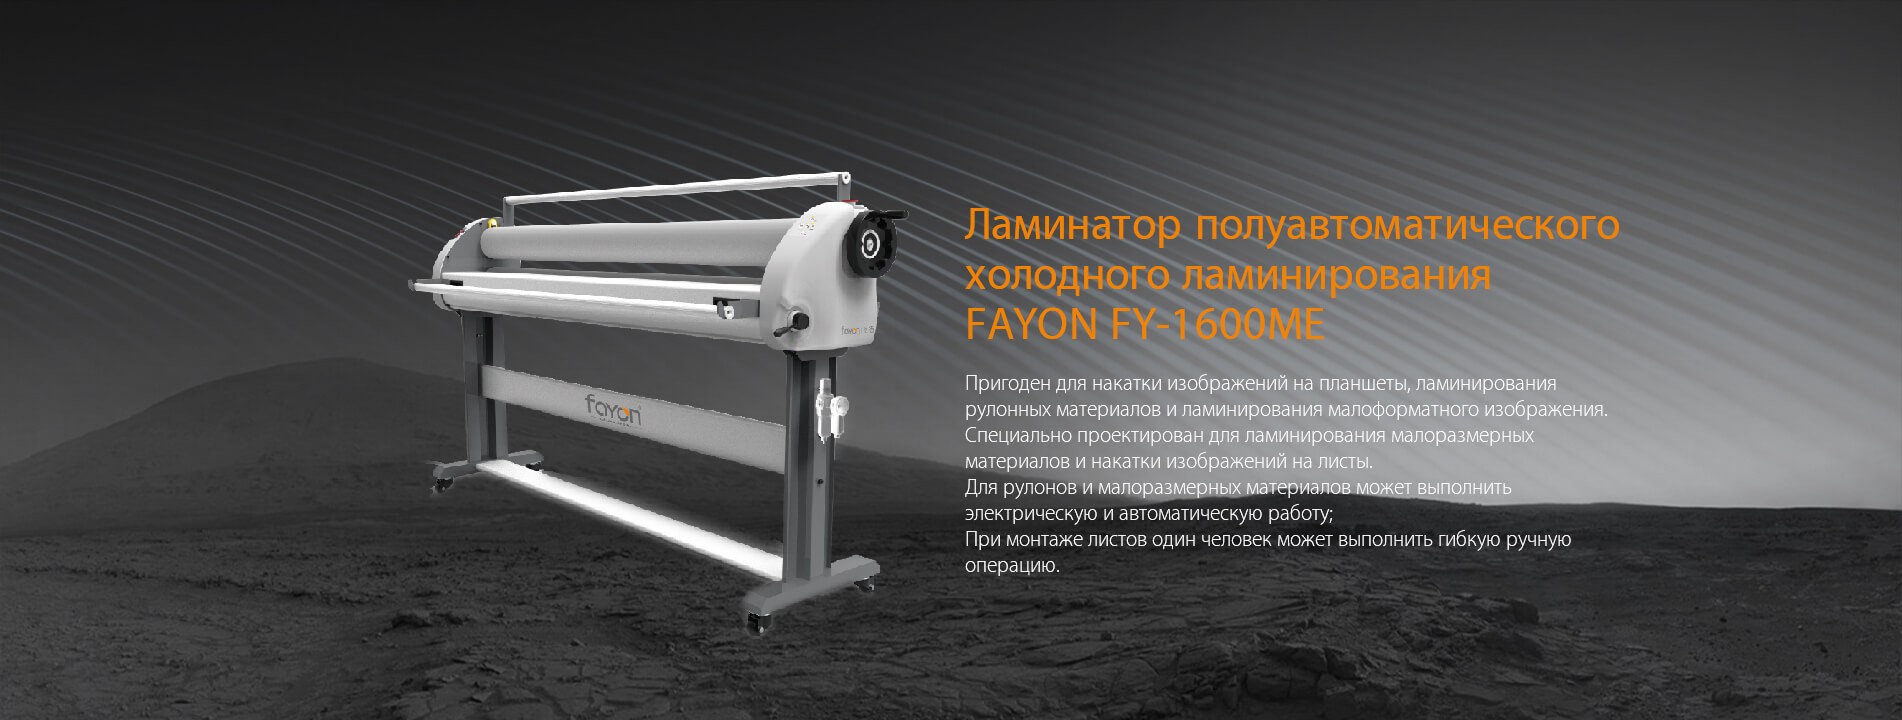 Ламинатор полуавтоматического холодного ламинирования FY-1600ME